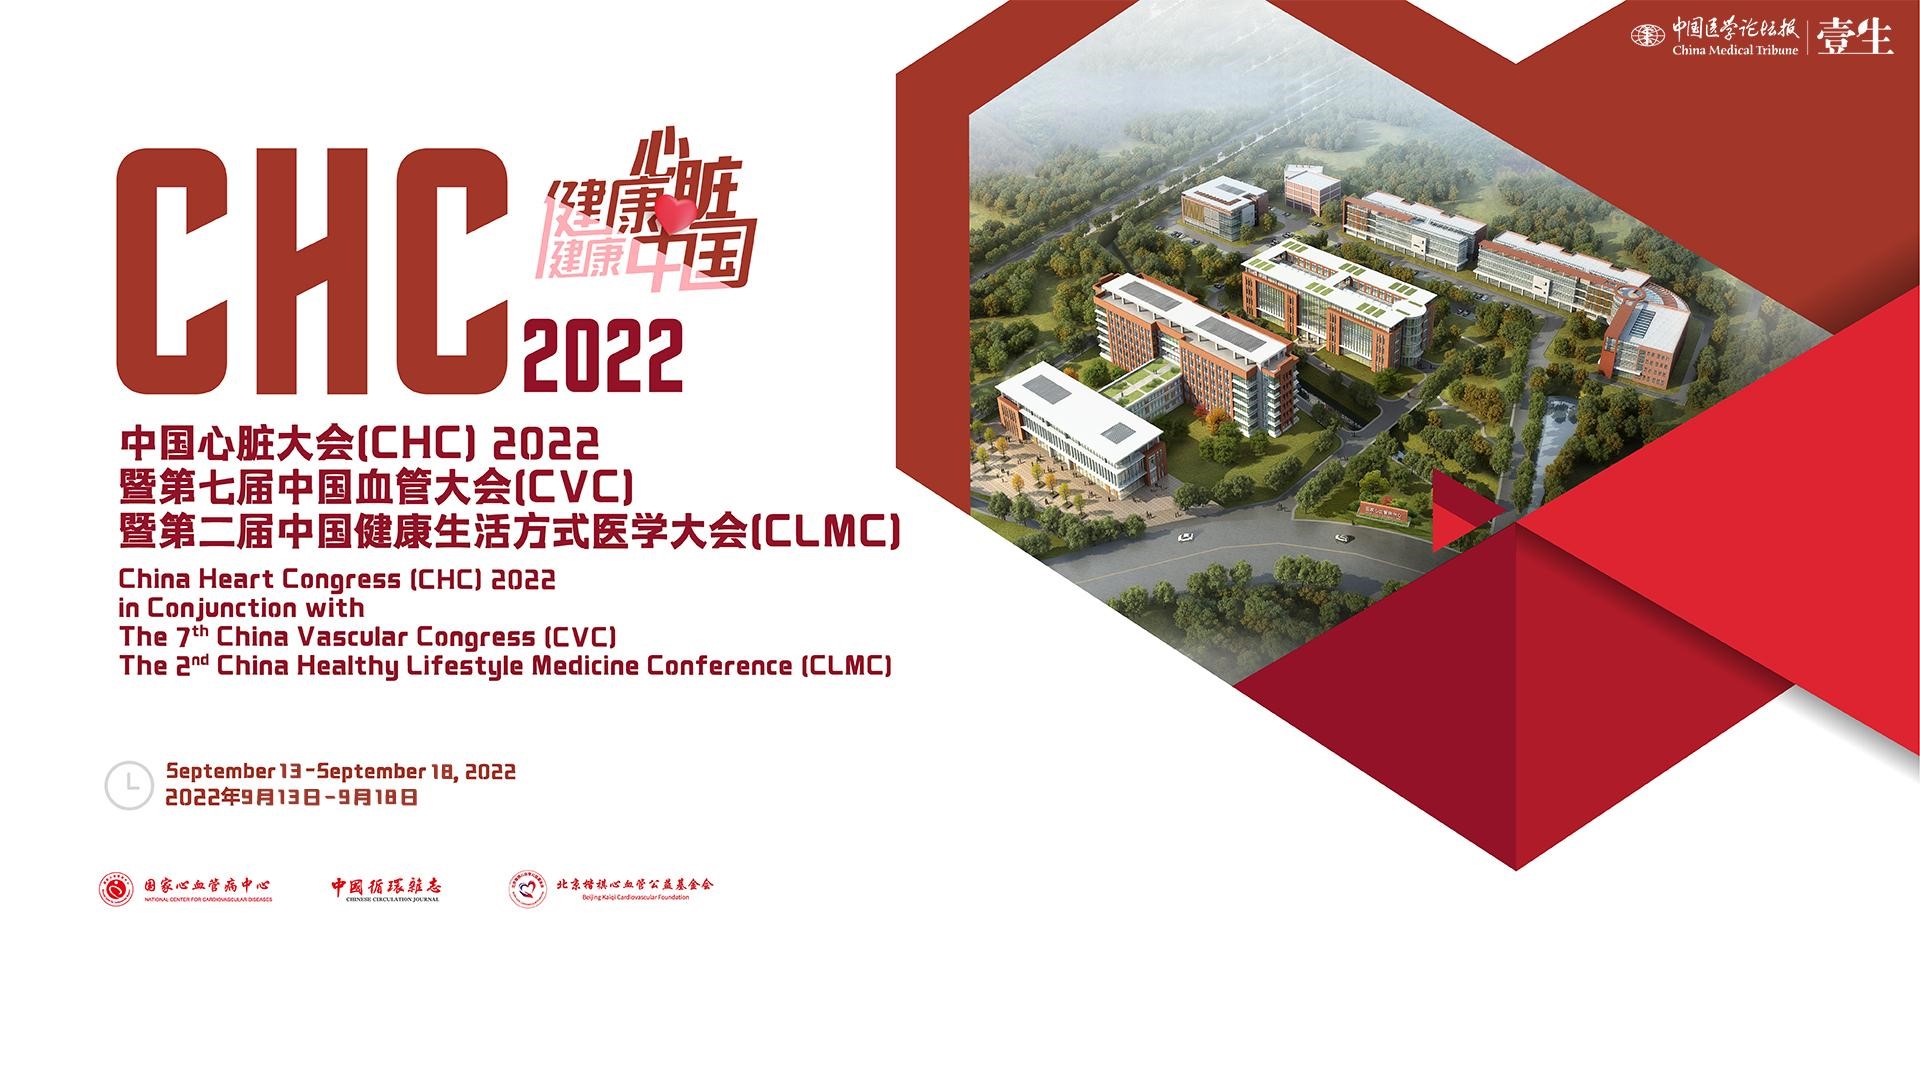 2022中国心脏大会（CHC）暨2022第七届中国血管大会（<font color="red">CVC</font>）暨第二届健康生活方式医学大会（CHMC）